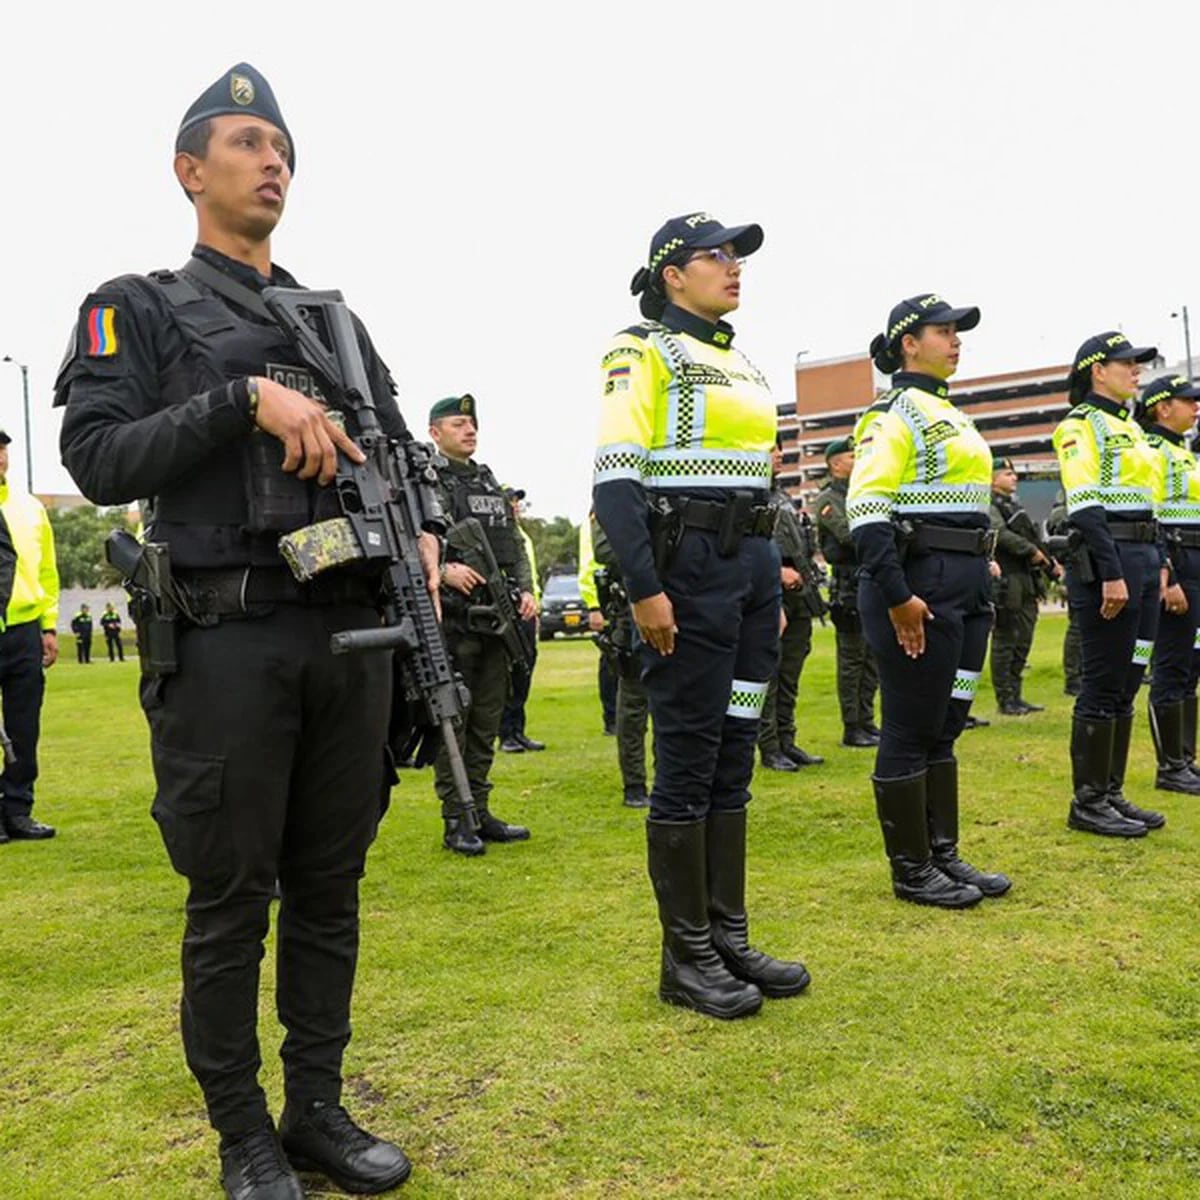 Salarios  ¿Cuánto dinero puede llegar a ganar un Policía Nacional?